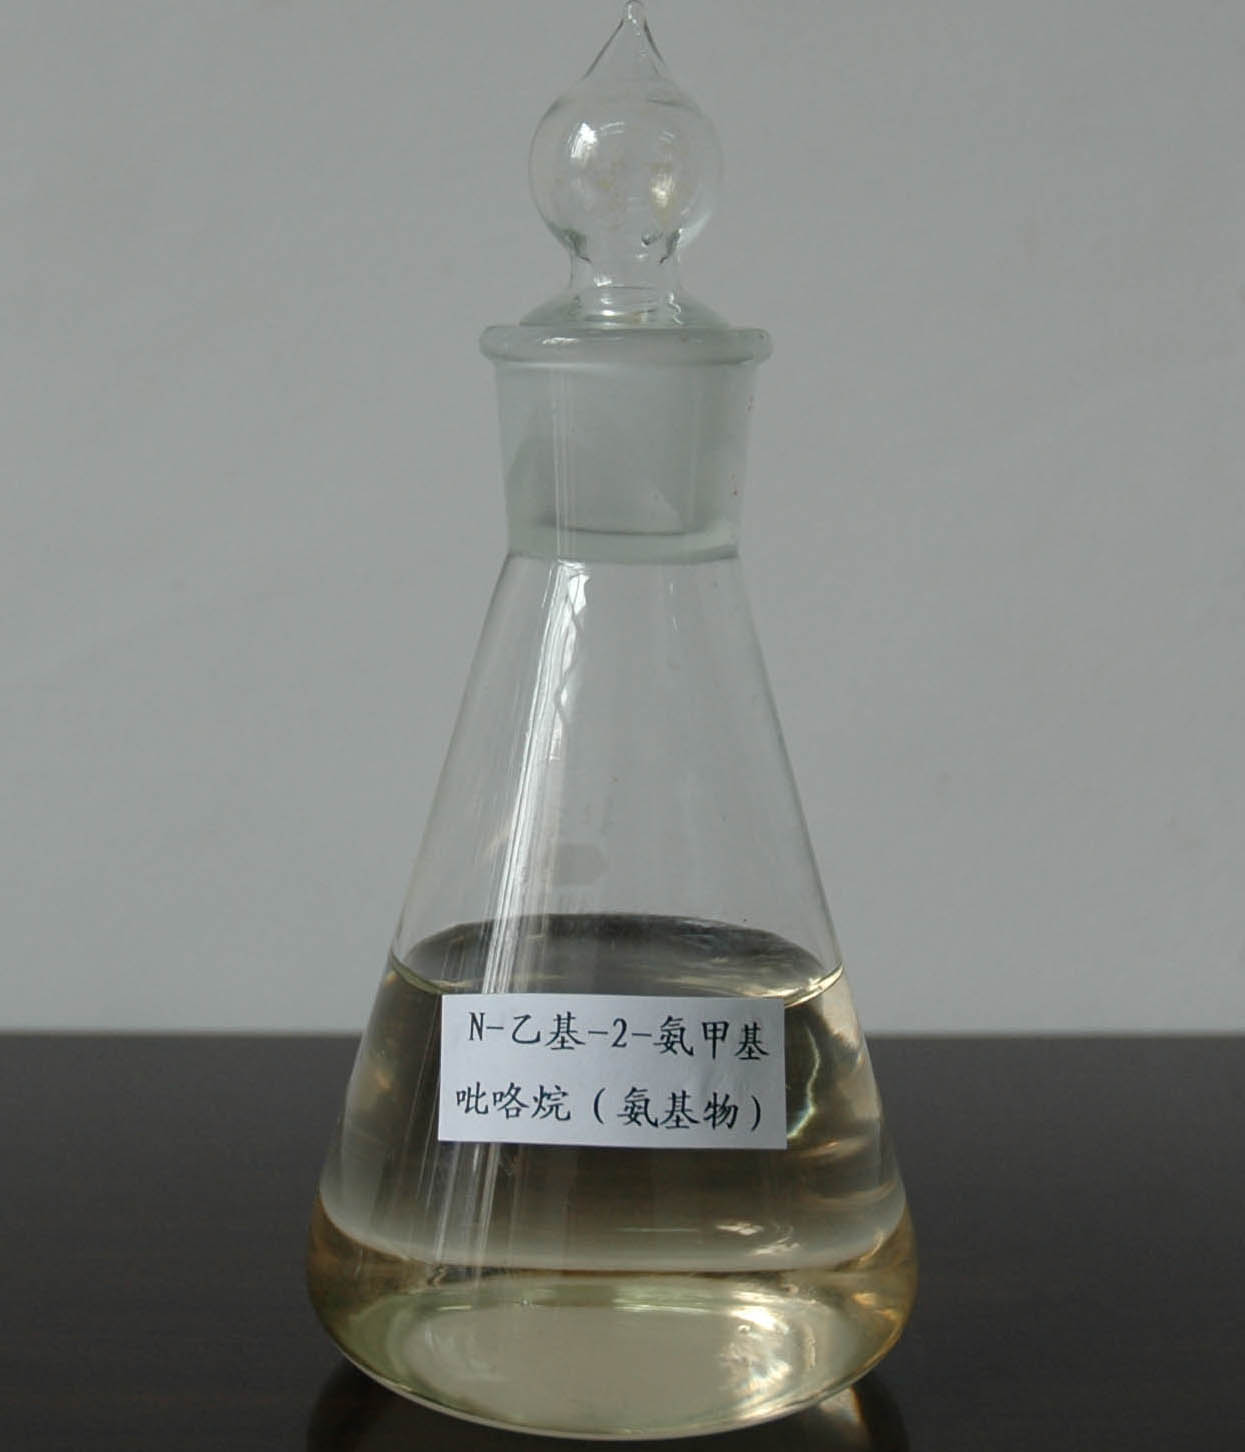  N-Ethyl-2-Aminomethyl Pirrolidine (N-этил -Aminomethyl Pirrolidine)